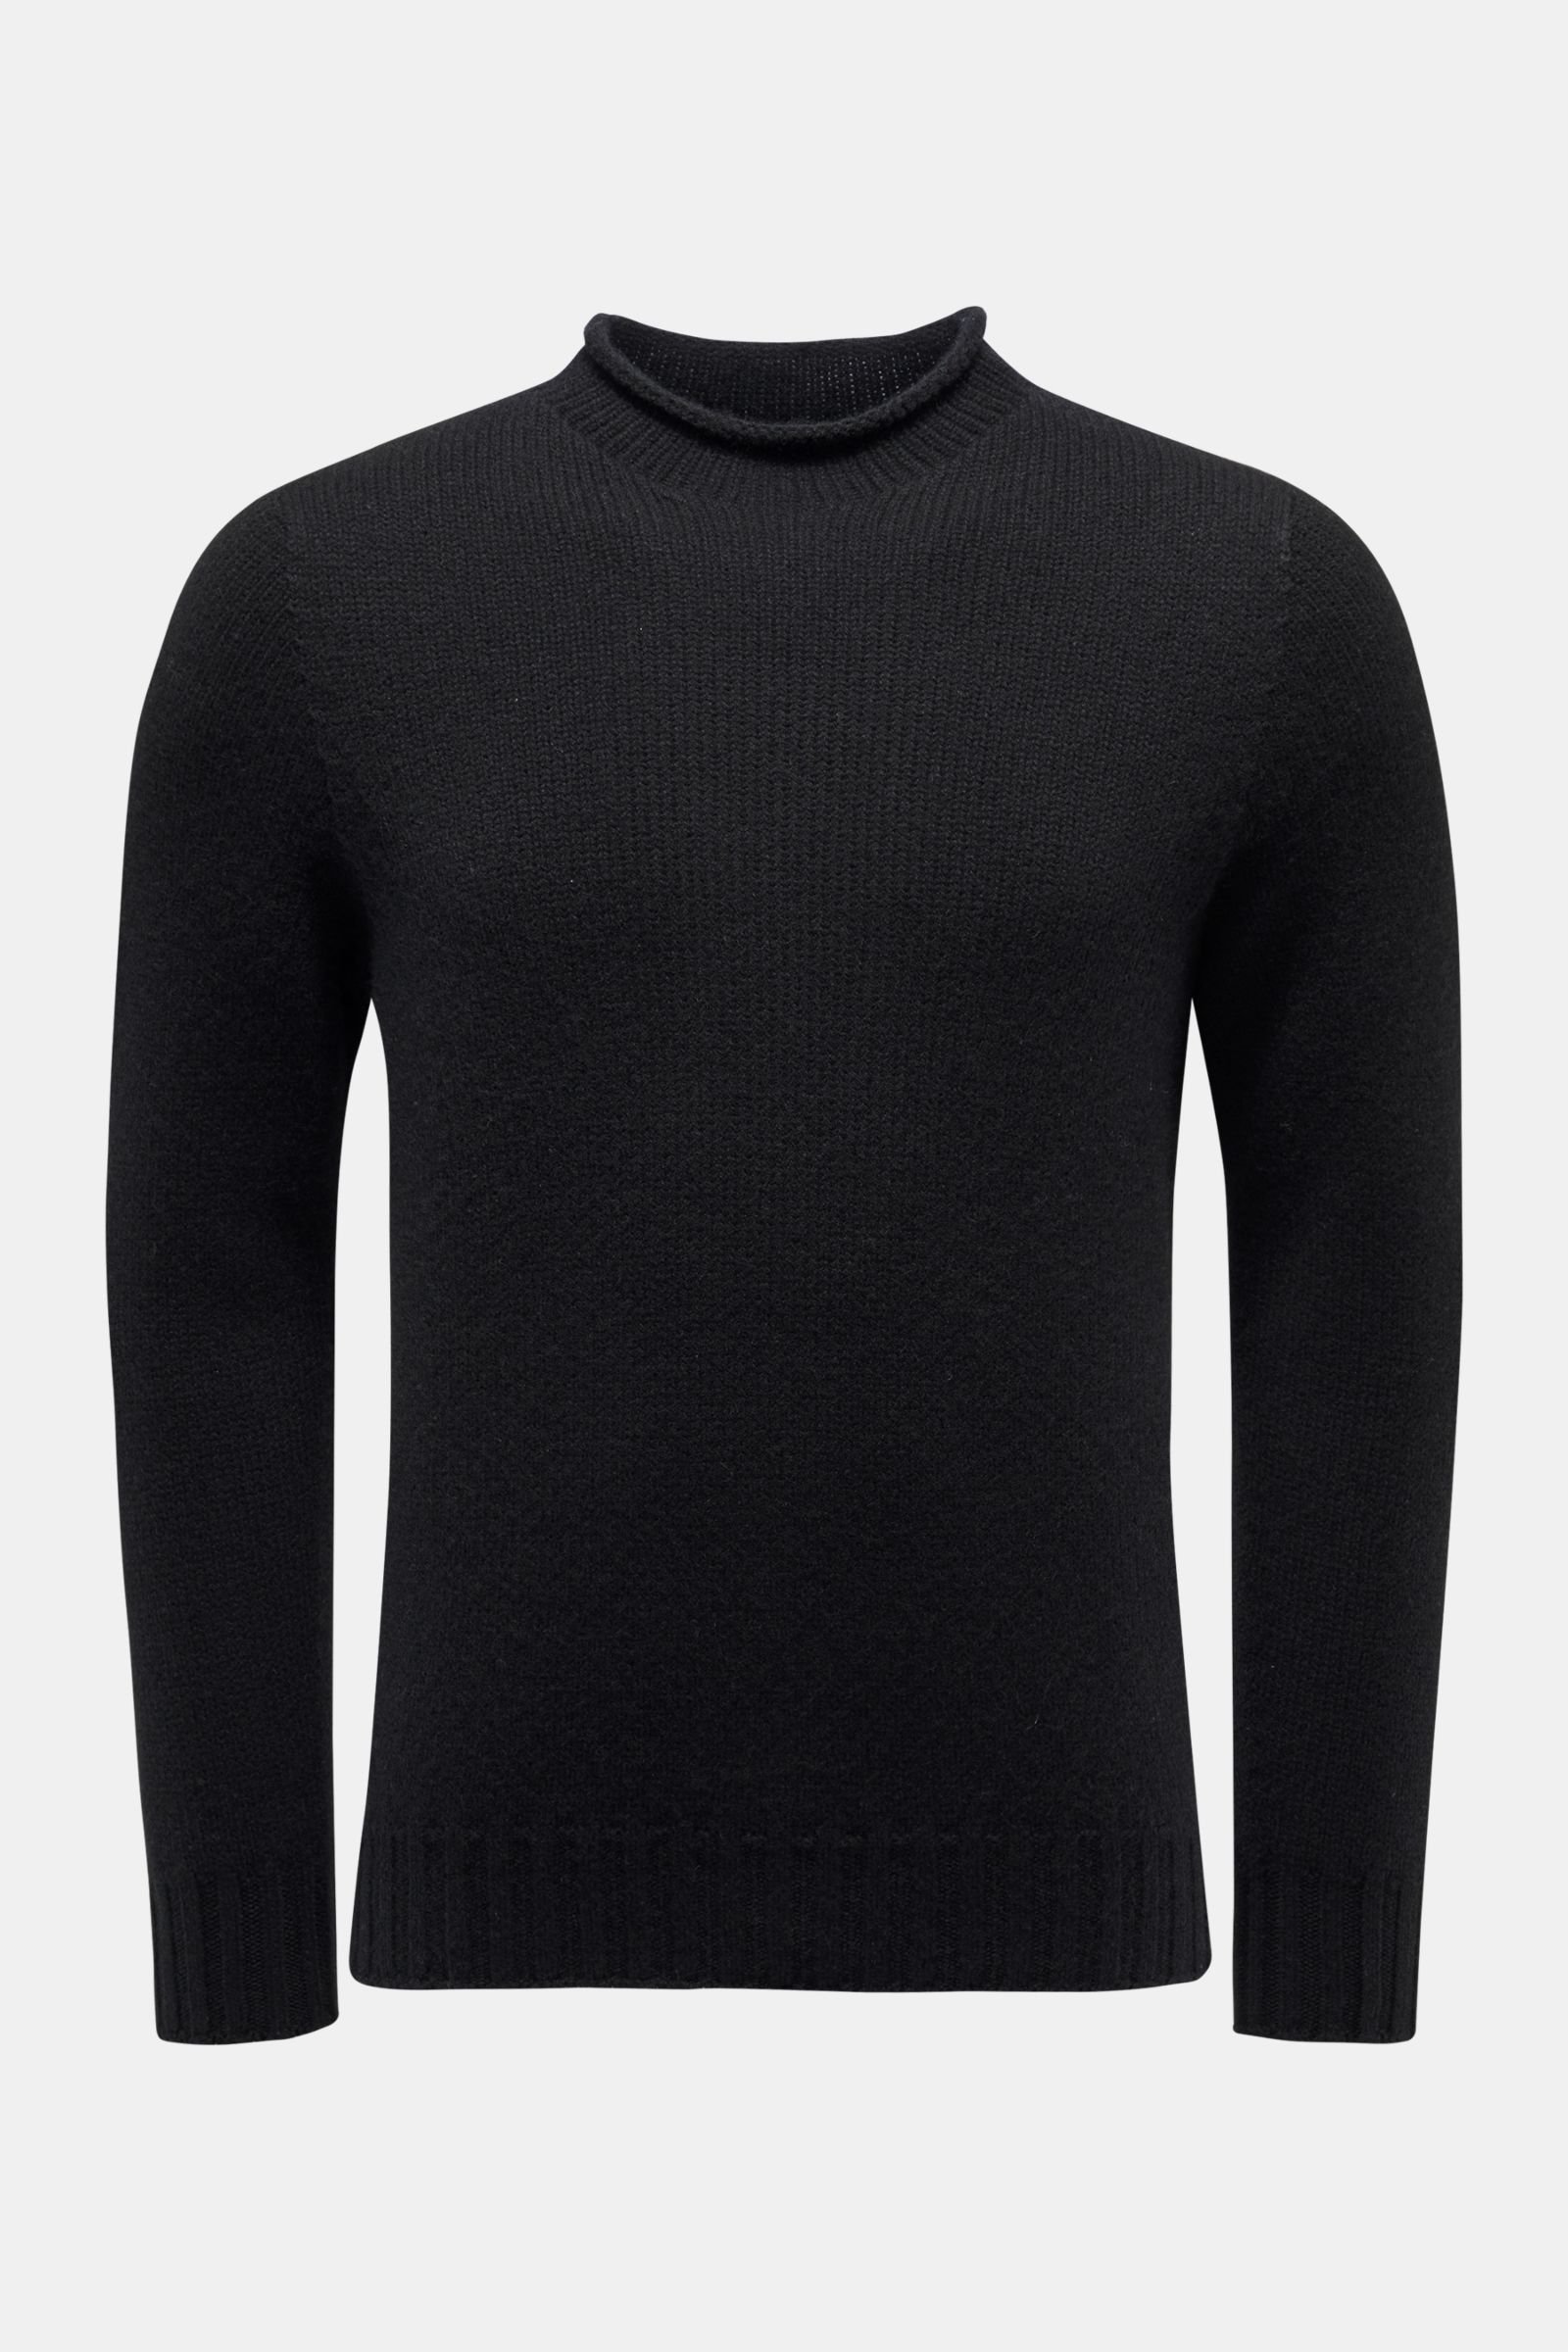 Cashmere Rundhals-Pullover schwarz